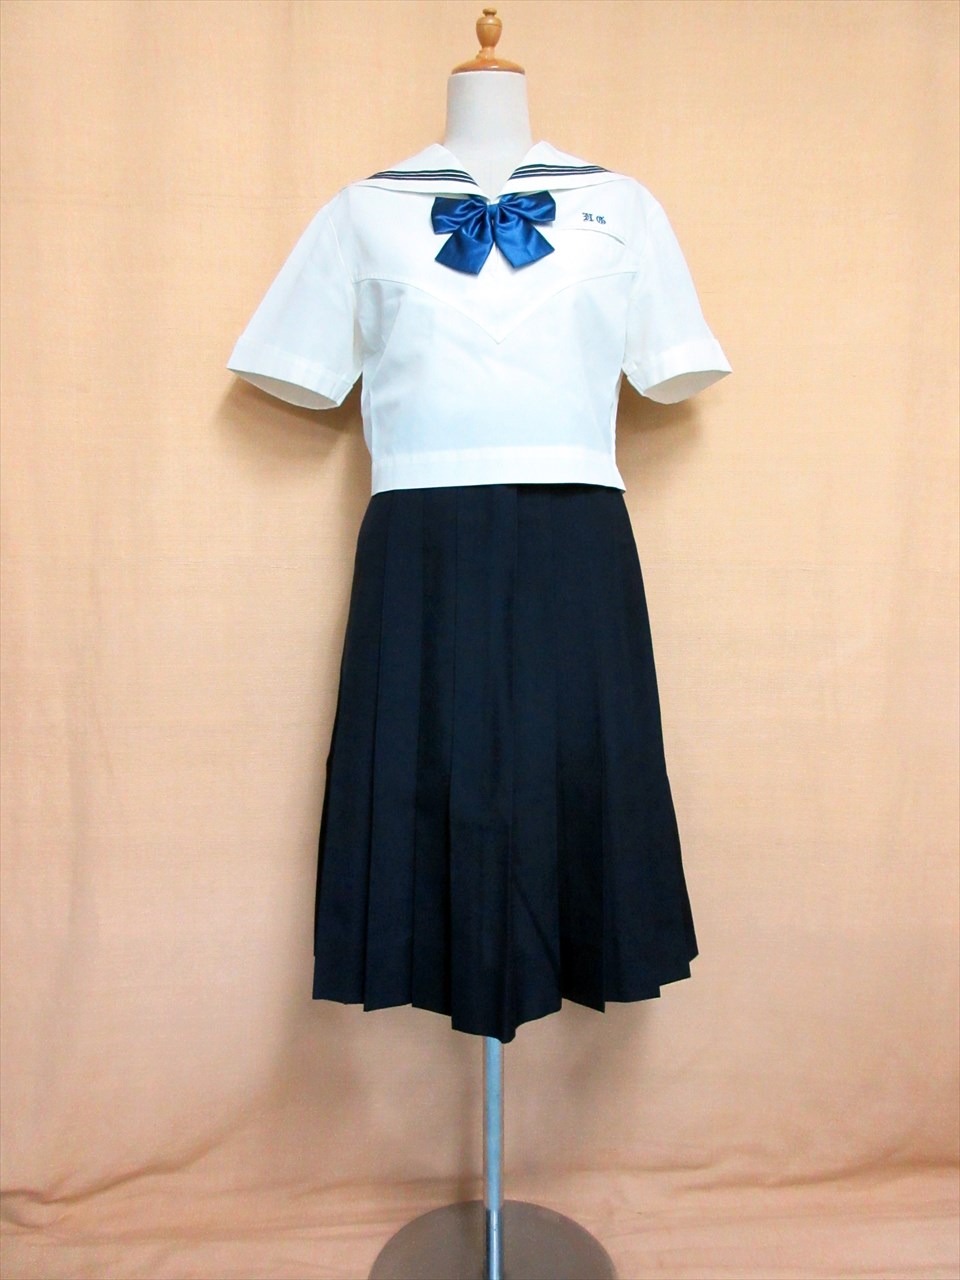 福岡県 博多女子高等学校夏服の買い取り – 全国制服買い取りセンター